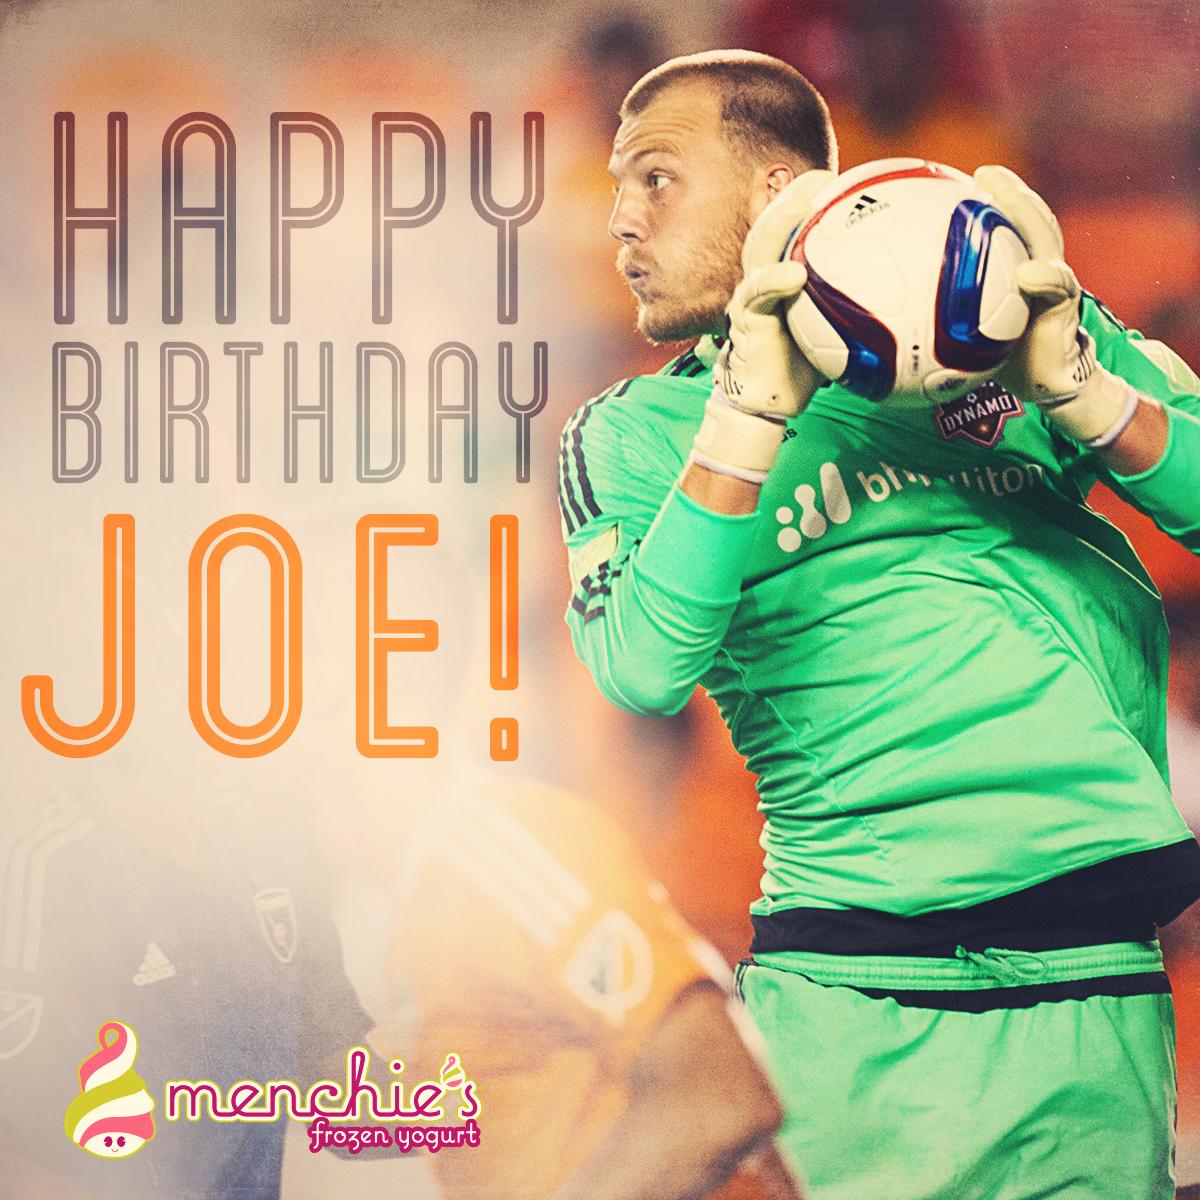 Happy Birthday Joe! to wish Joe Willis a Happy Birthday. (via 